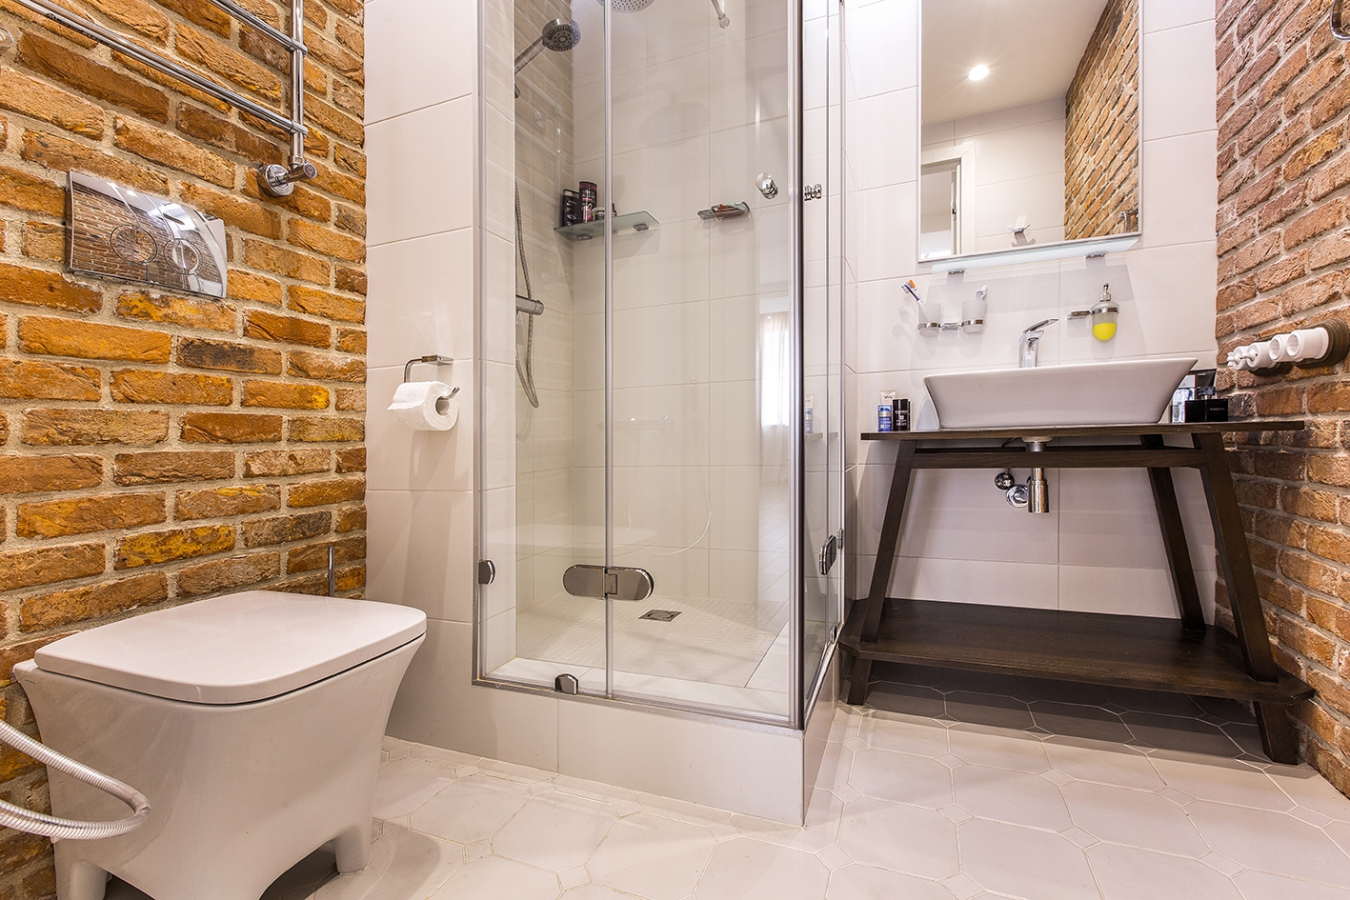 Уютная ванная комната в стиле лофт с кирпичными стенами